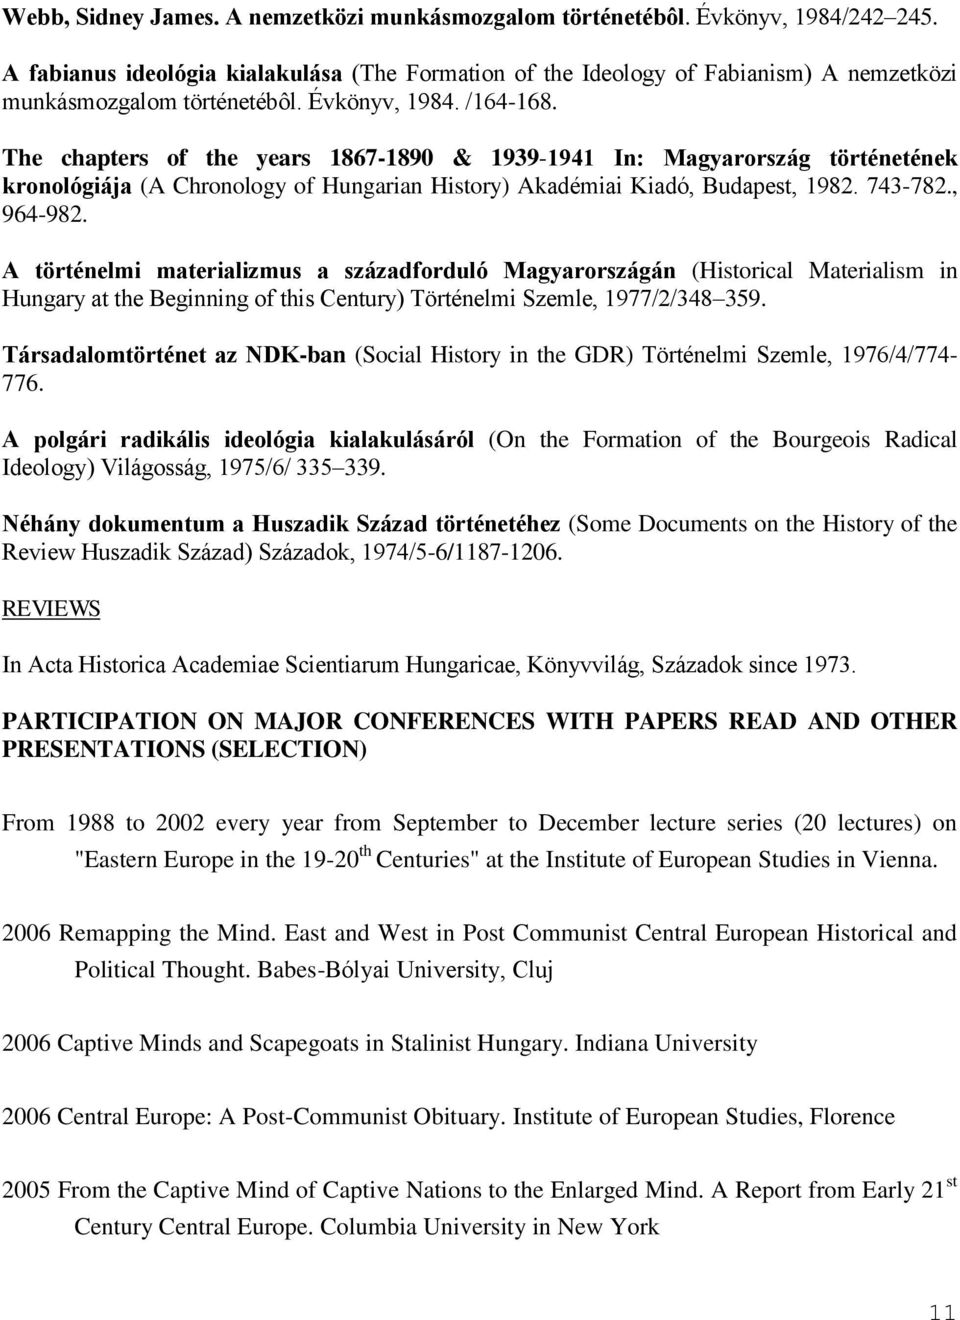 The chapters of the years 1867-1890 & 1939-1941 In: Magyarország történetének kronológiája (A Chronology of Hungarian History) Akadémiai Kiadó, Budapest, 1982. 743-782., 964-982.